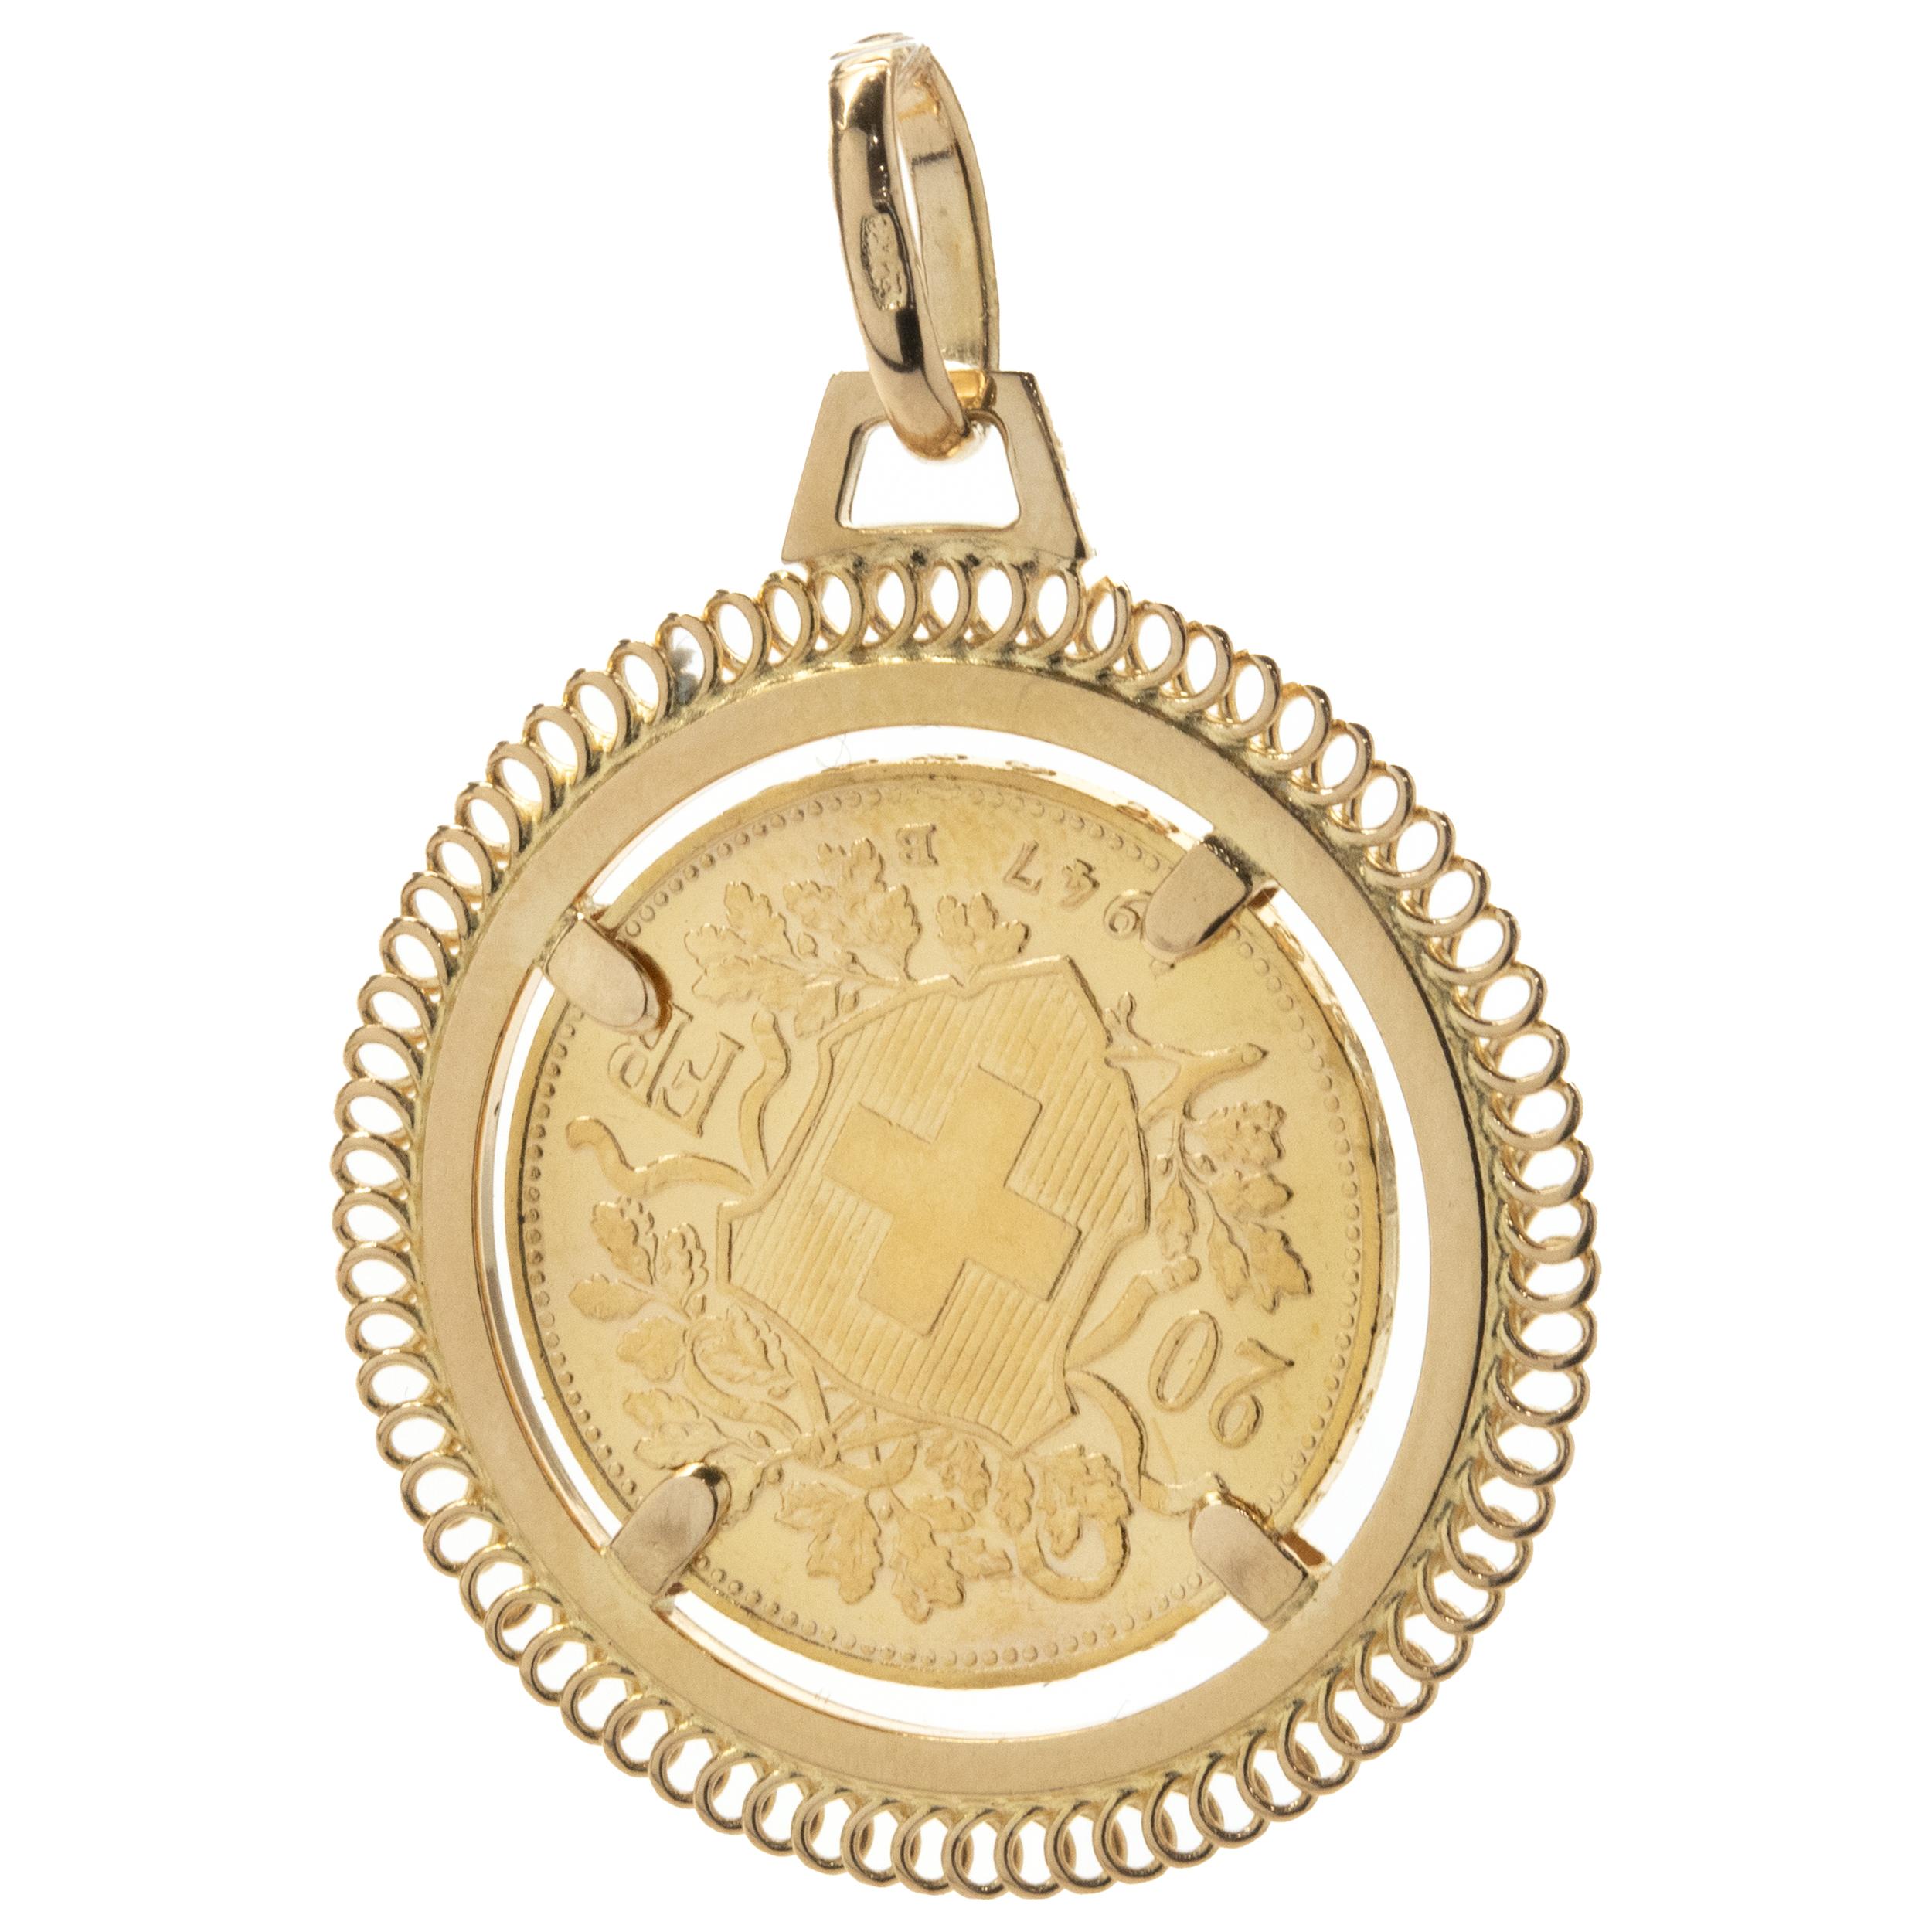 Designer: custom
Material: 14K yellow gold 
Dimensions: pendant measures 42 X 30.5mm
Weight: 10.66 grams
